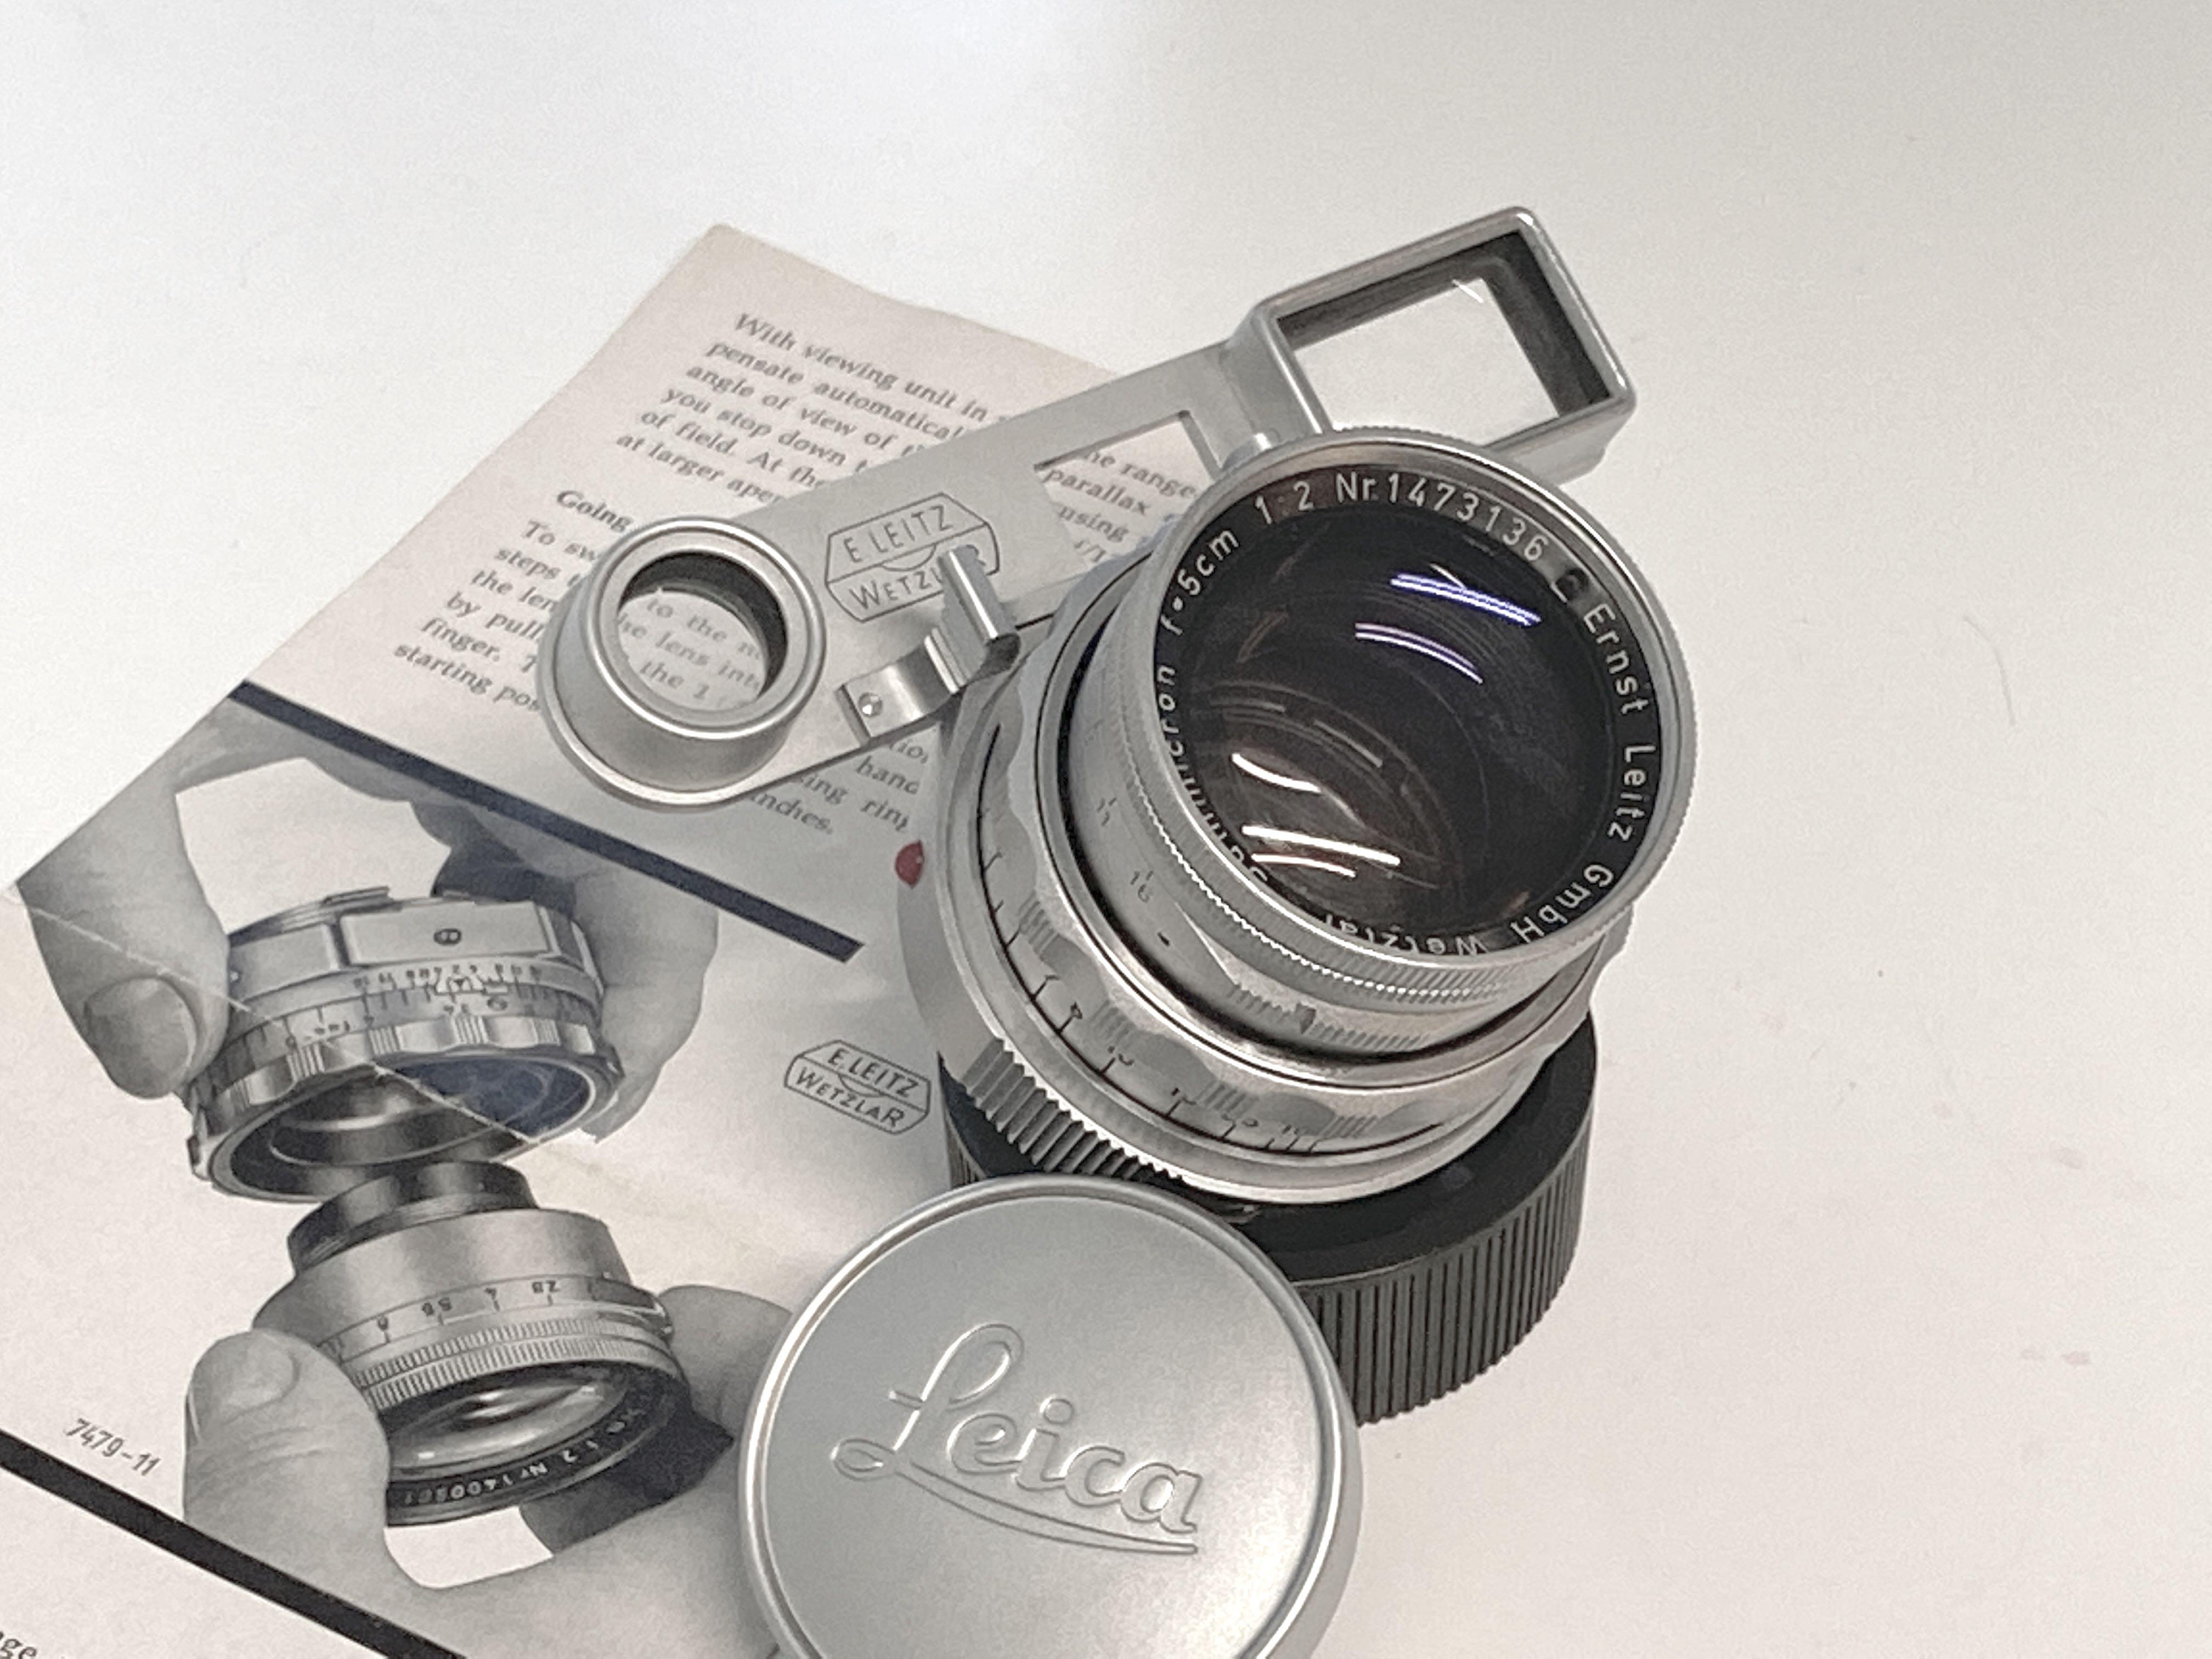 東京激安 Leitz Wetzlar summitar 50mm f2 L39 後期型 フィルムカメラ